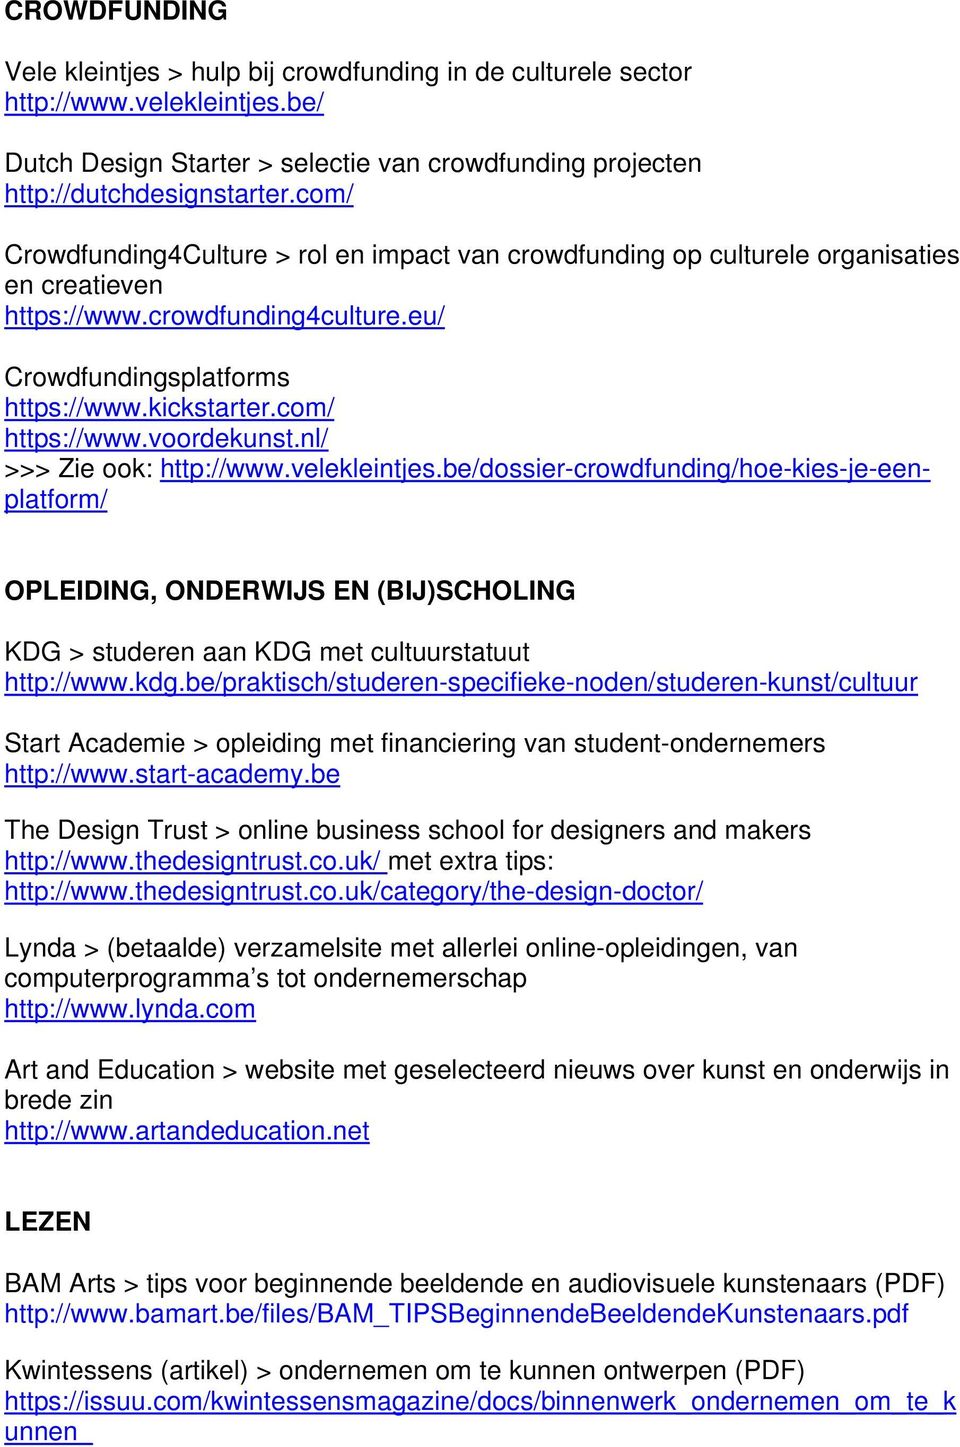 voordekunst.nl/ >>> Zie ook: http://www.velekleintjes.be/dossier-crowdfunding/hoe-kies-je-eenplatform/ OPLEIDING, ONDERWIJS EN (BIJ)SCHOLING KDG > studeren aan KDG met cultuurstatuut http://www.kdg.